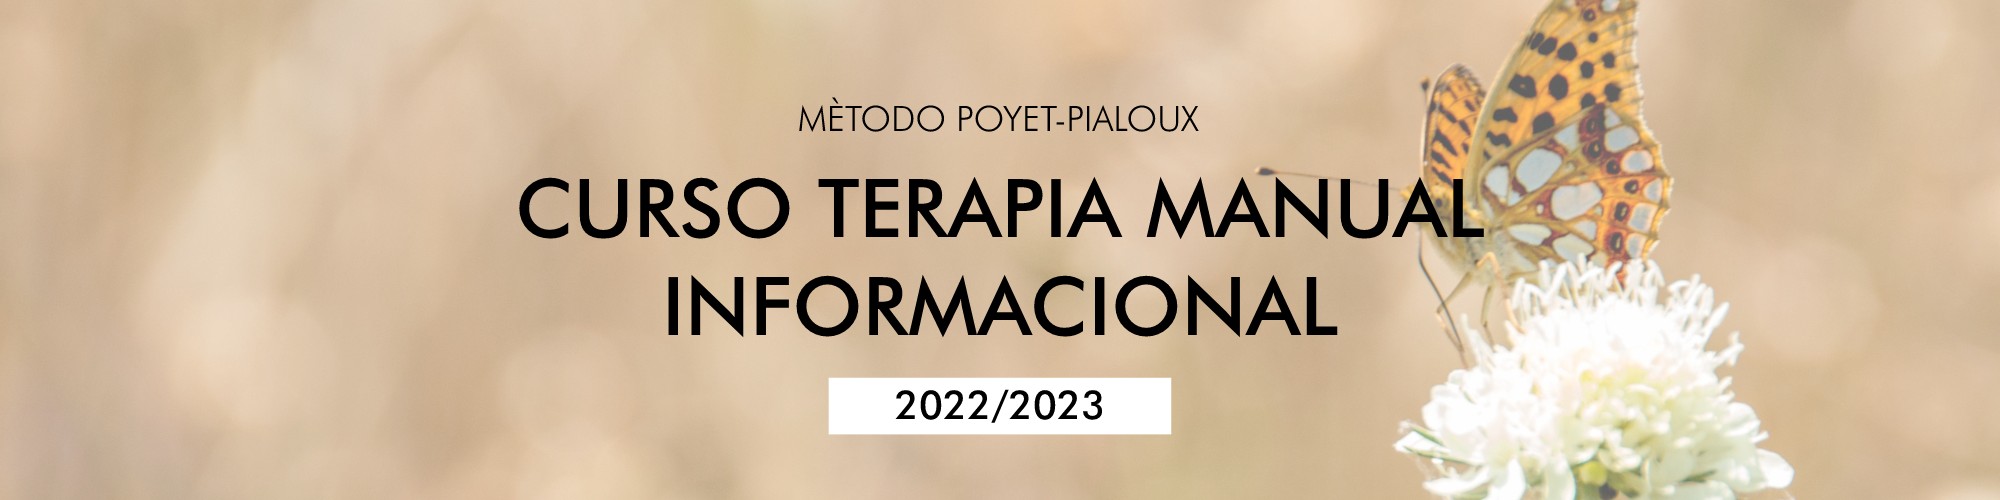 CURSO TERAPIA MANUAL INFORMACIONAL 2022 2023 Y 2023 2024 (2)